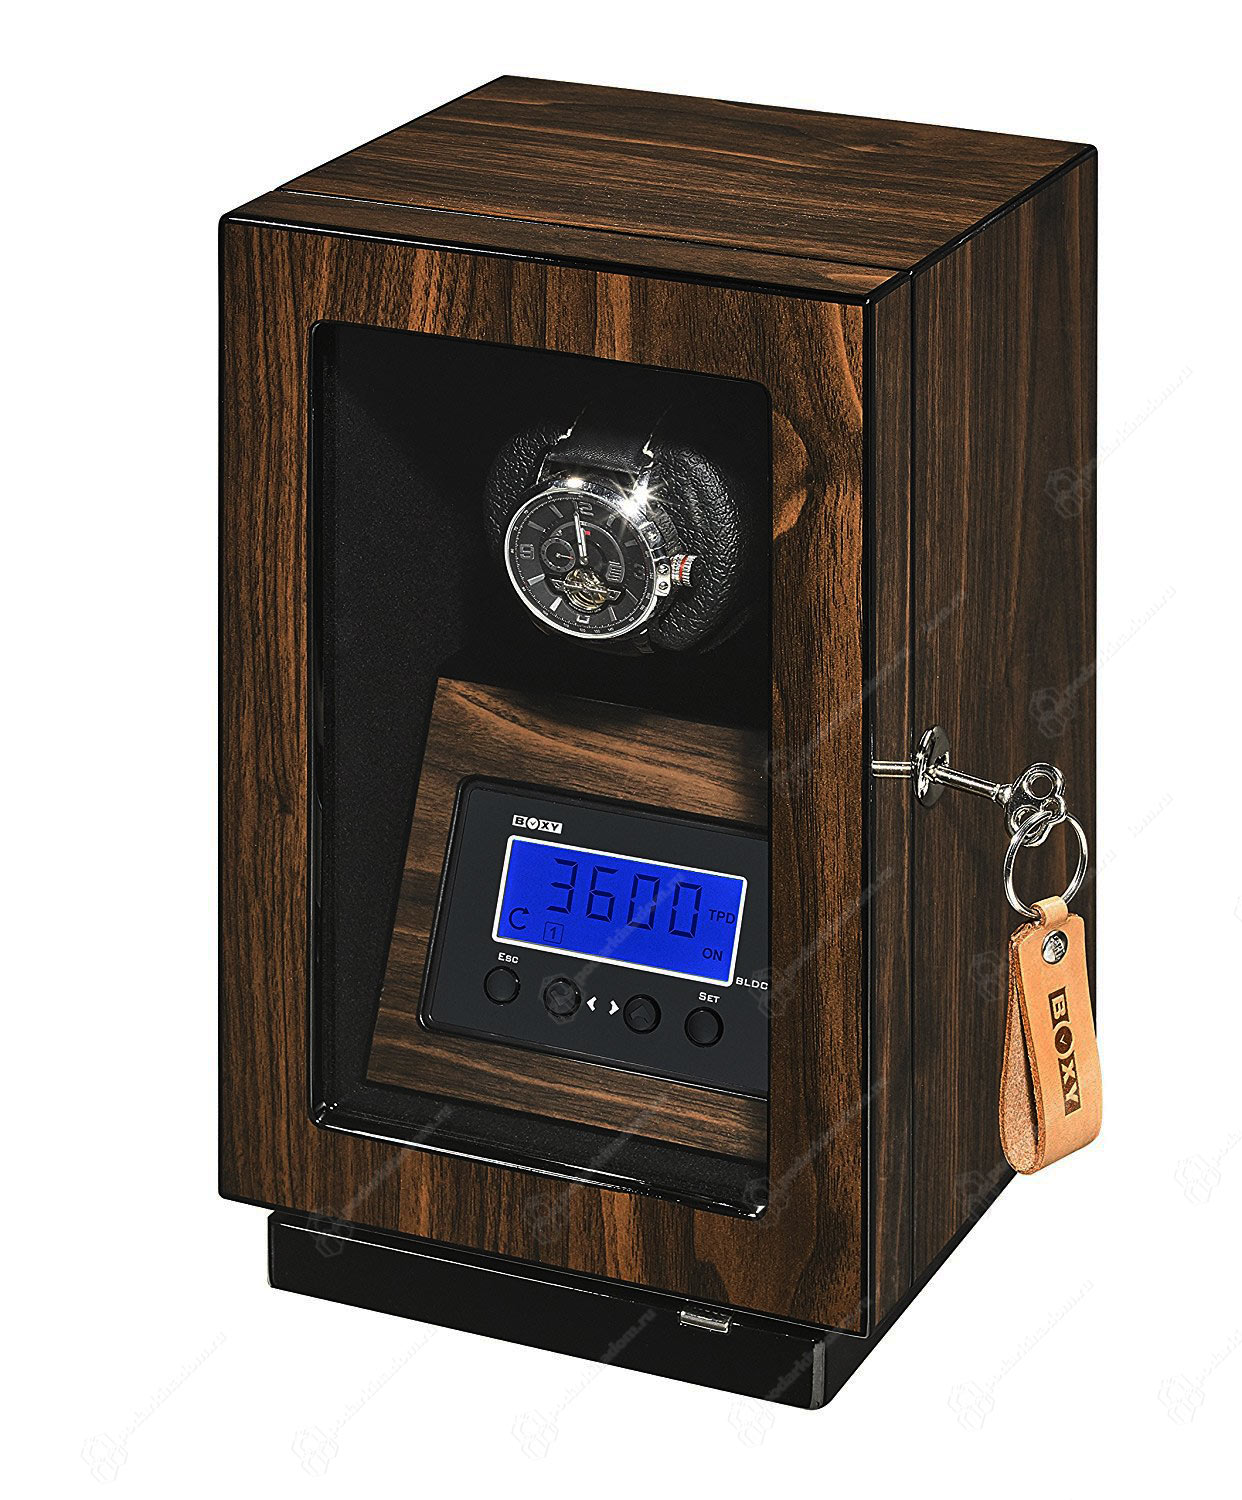 BLDC 01 Деревянная шкатулка для подзавода одних наручных часов. Отделка Макассар